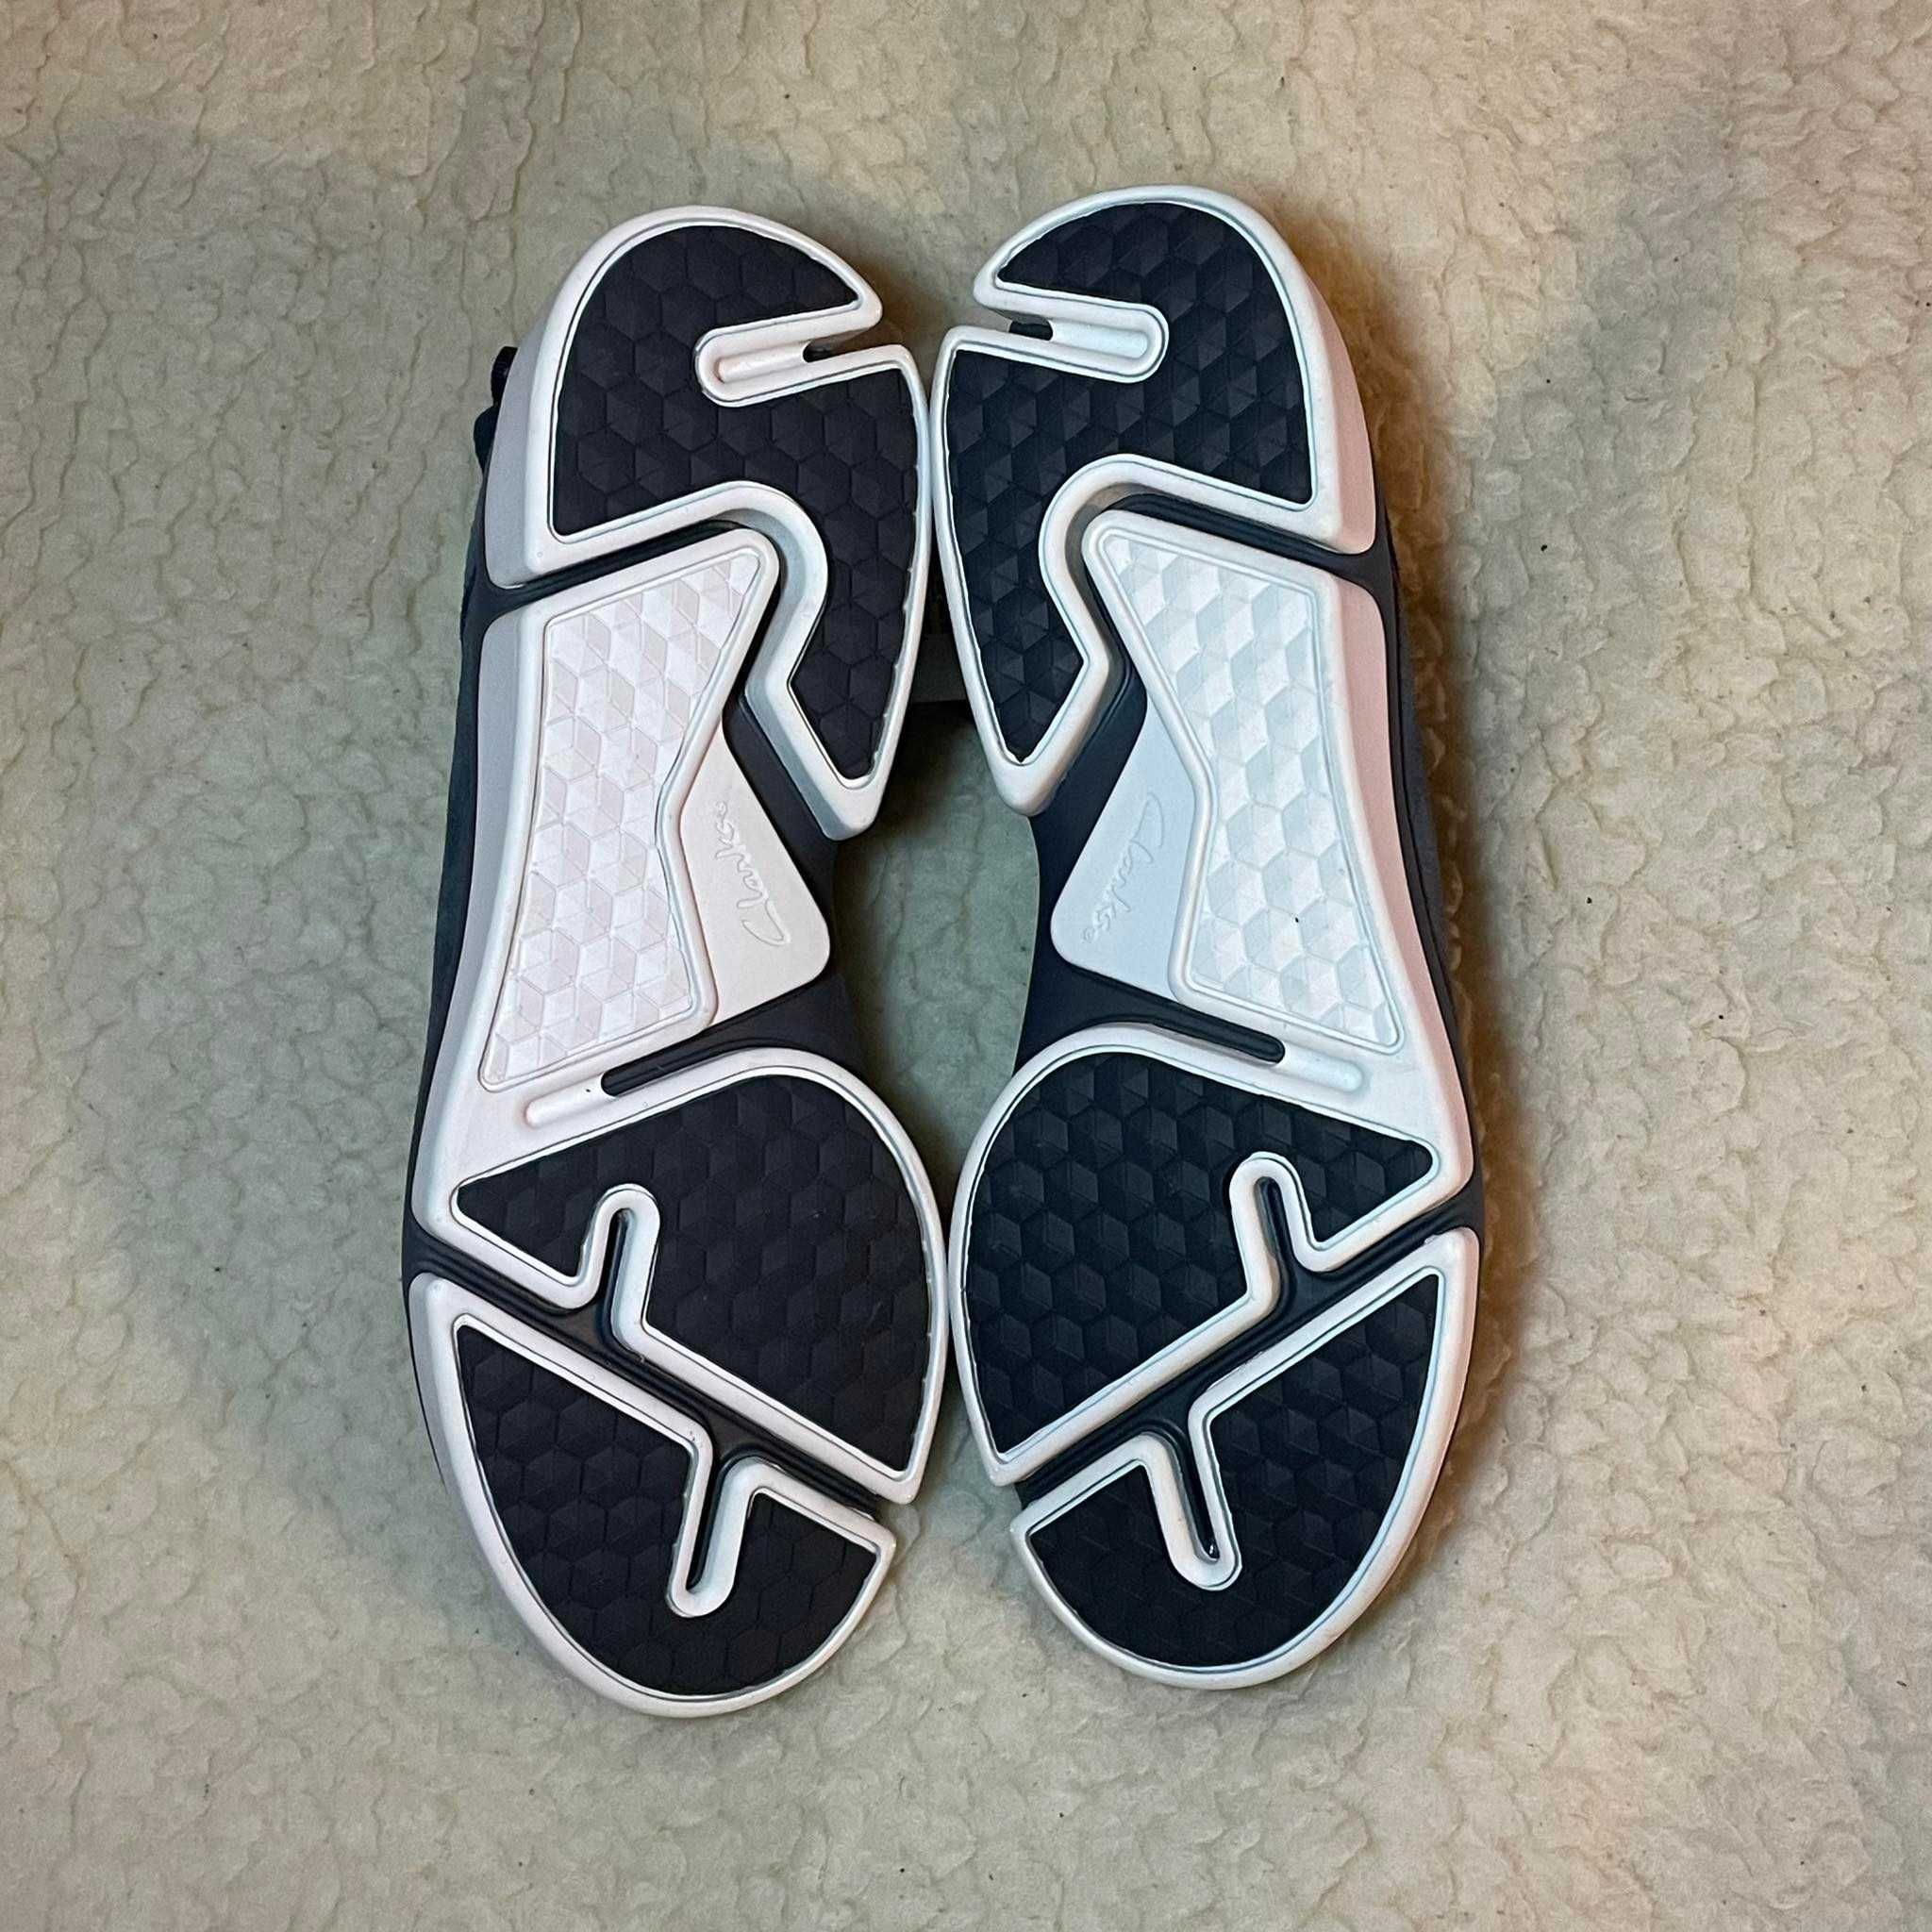 Нови Clarks Trigenic shoes мъжки обувки Кларкс номер 42 сникърси